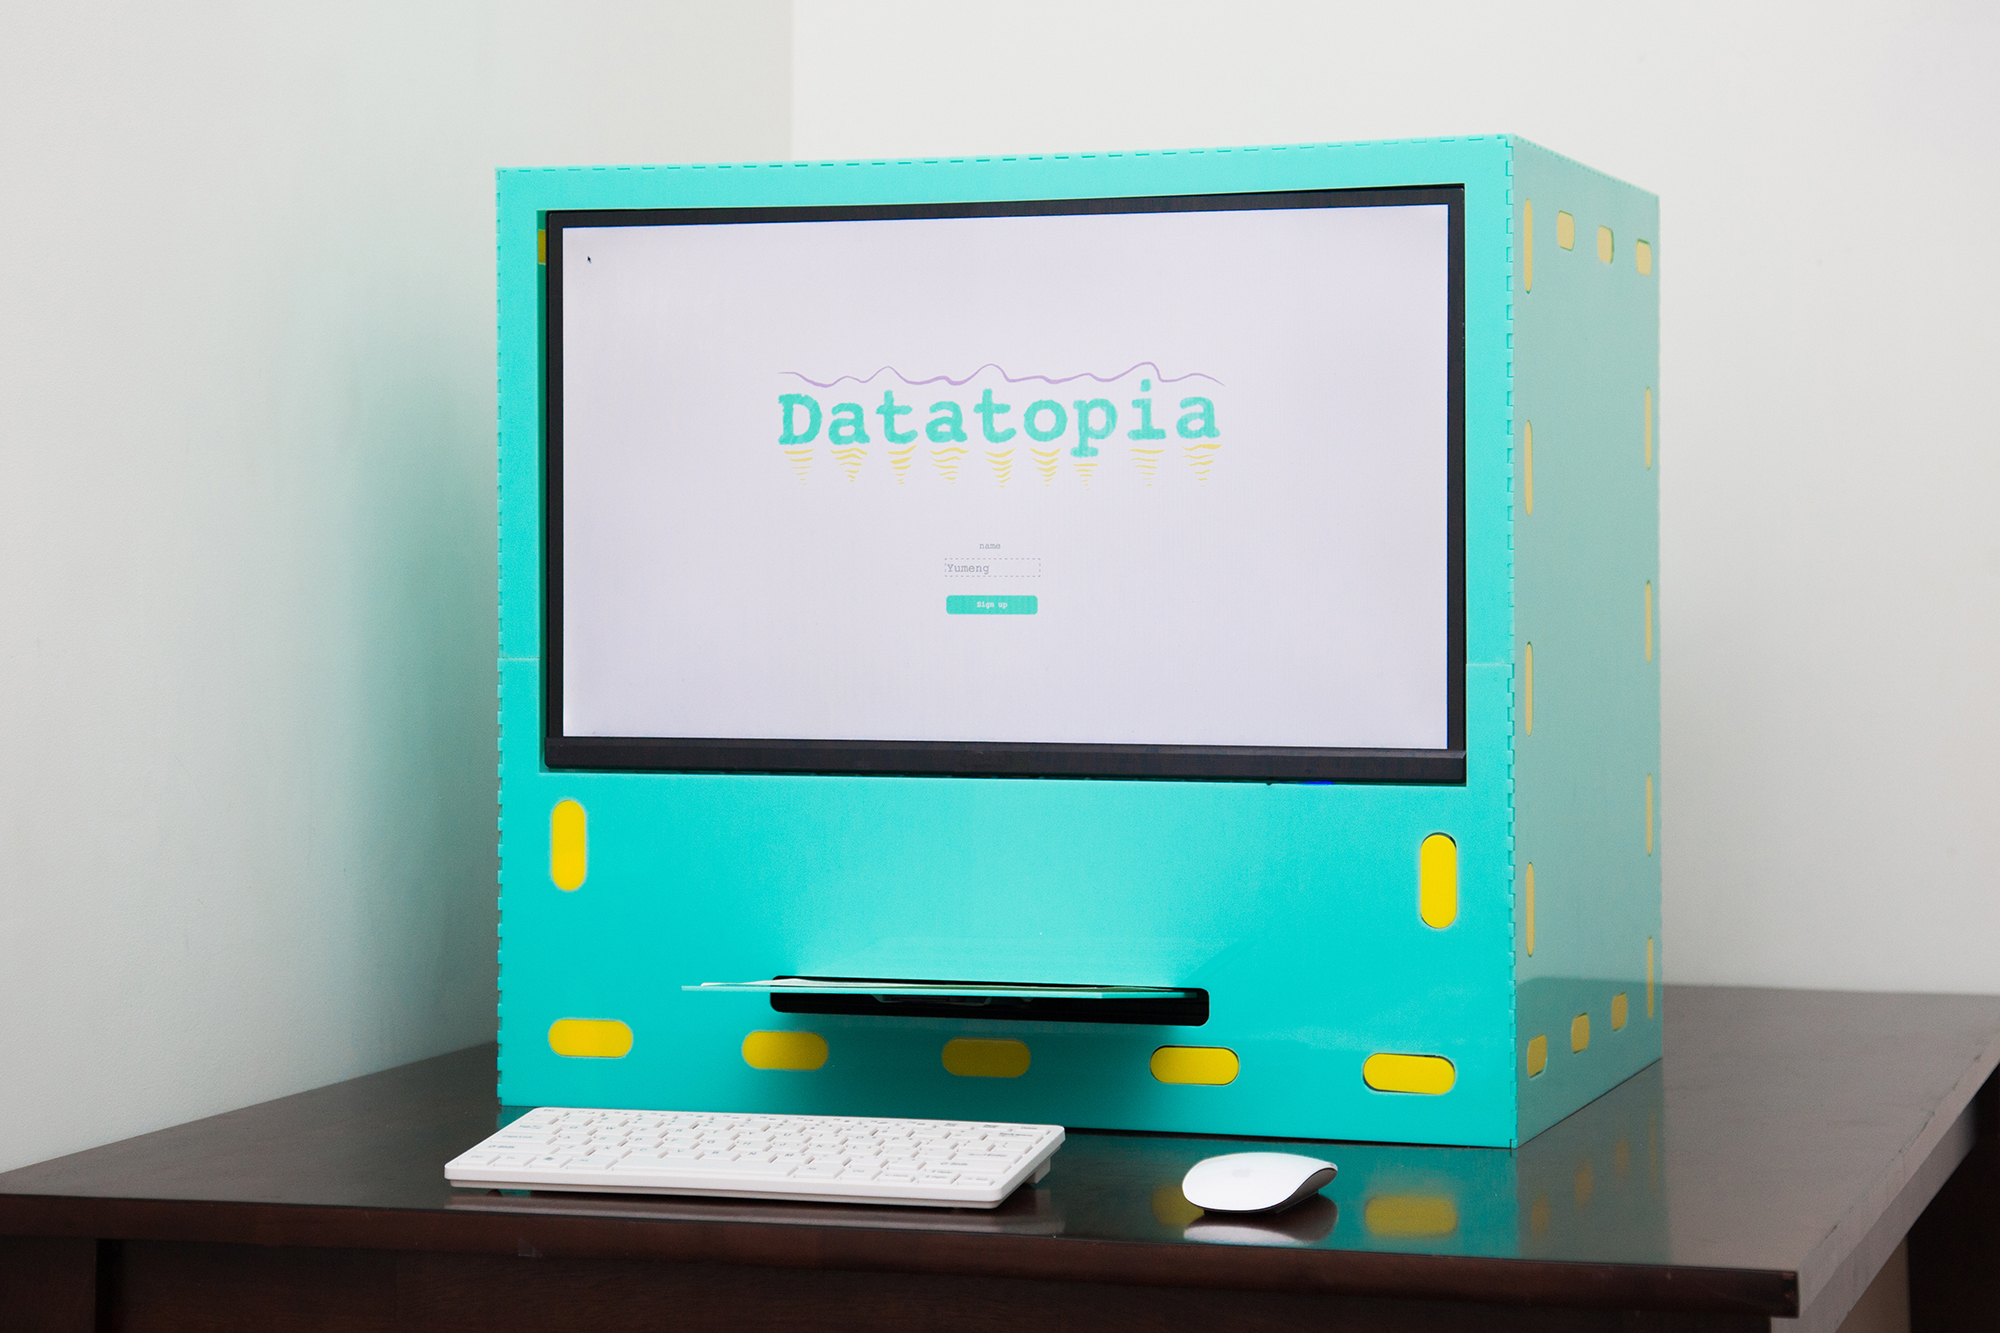 Datatopia